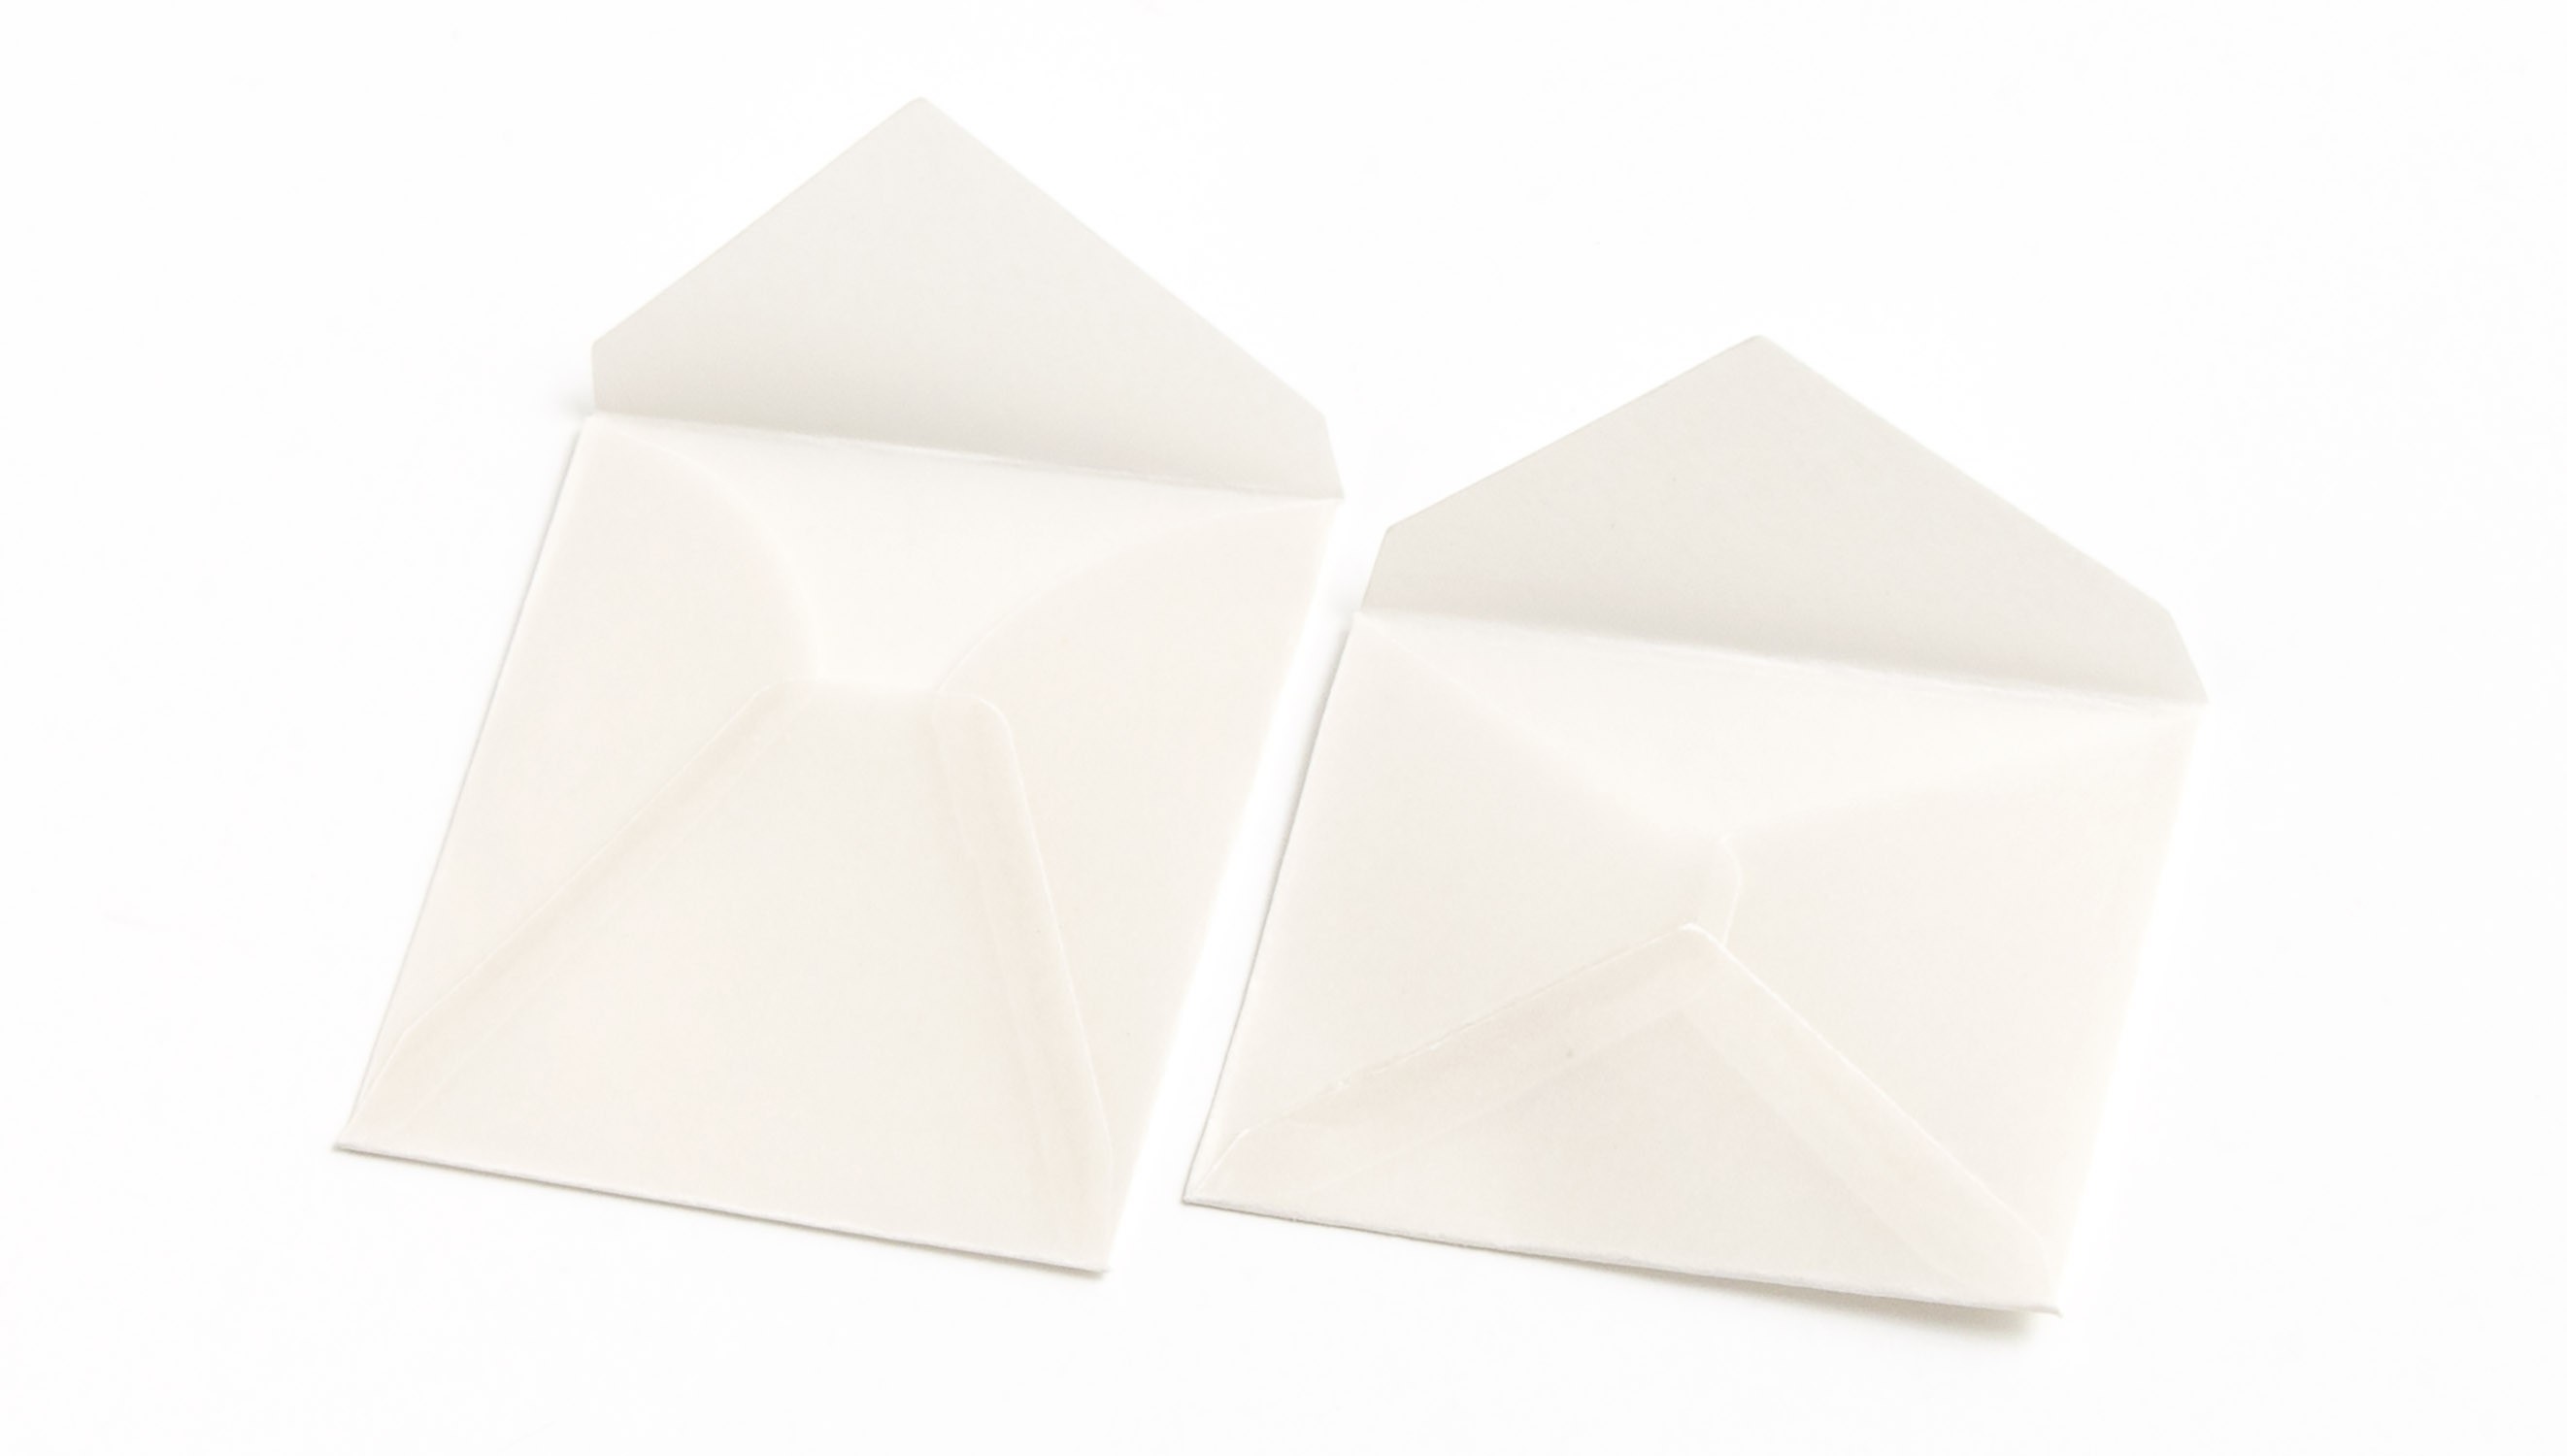  Tofficu 1 Set Envelope Letter Paper Vellum Envelopes